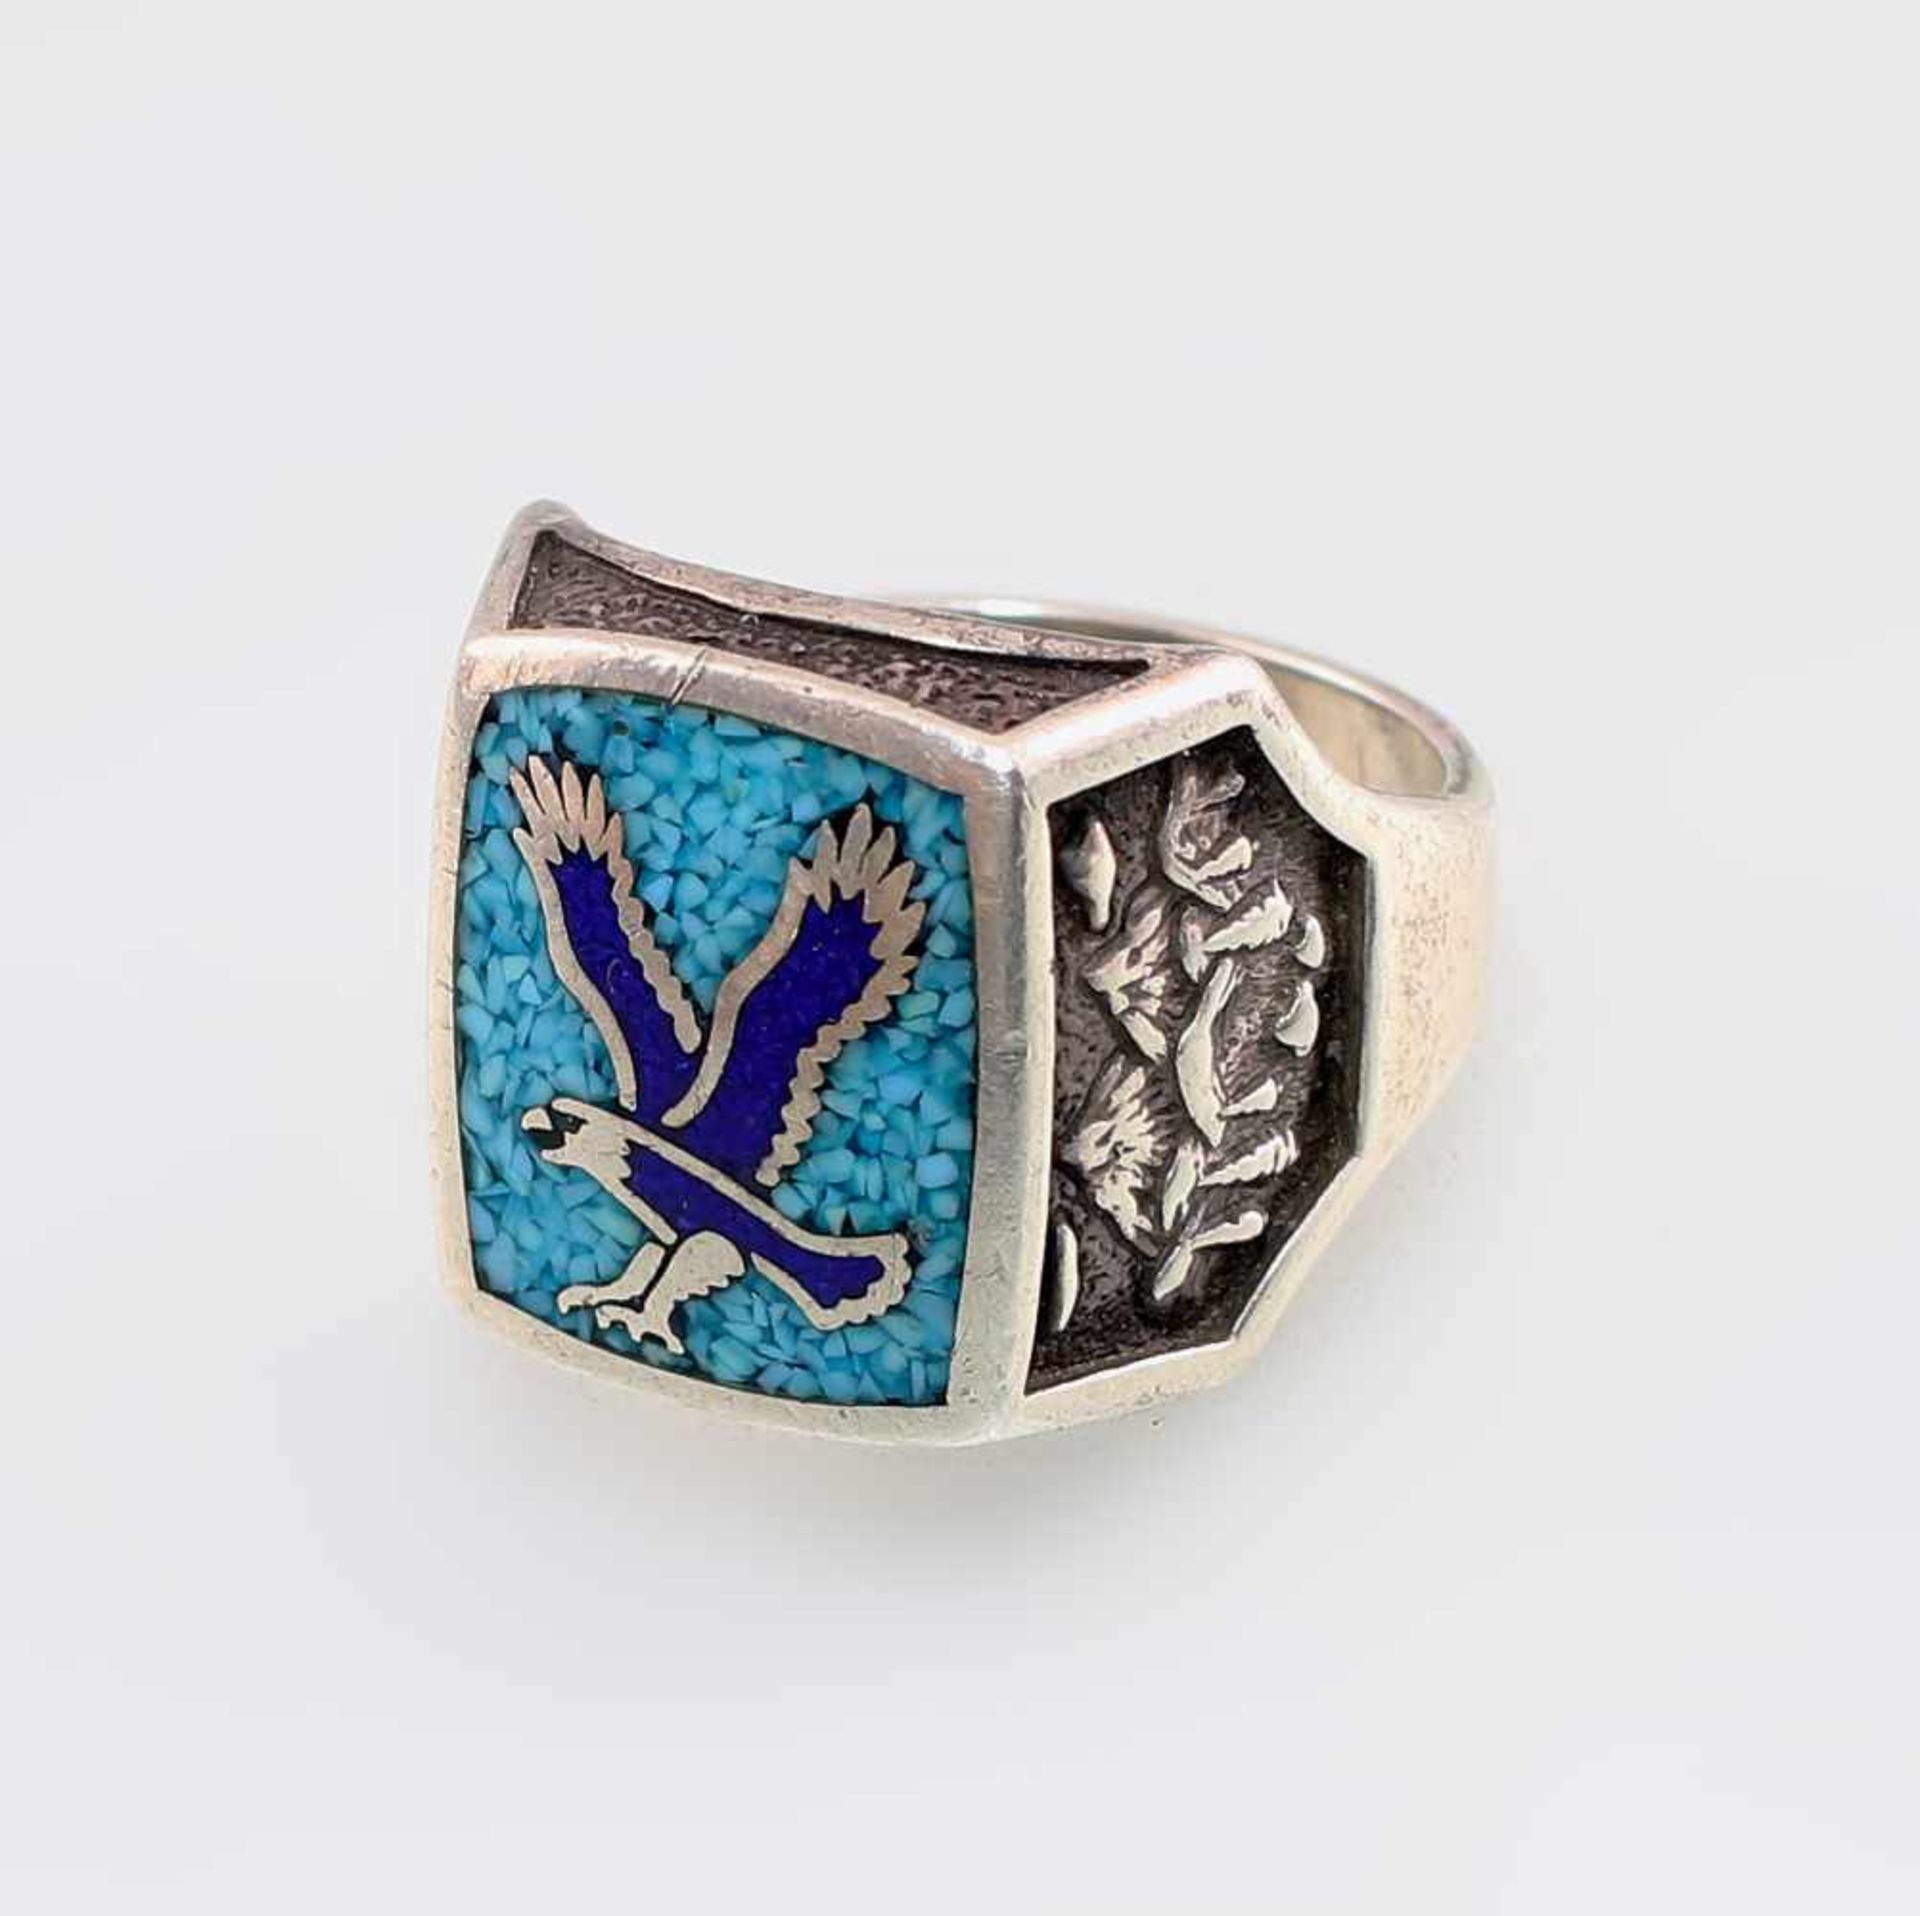 Herren-Ring mit Adler925er Silber, quadratischer, leicht abgerundeter Ringkopf mit Türkis-Mosaik,